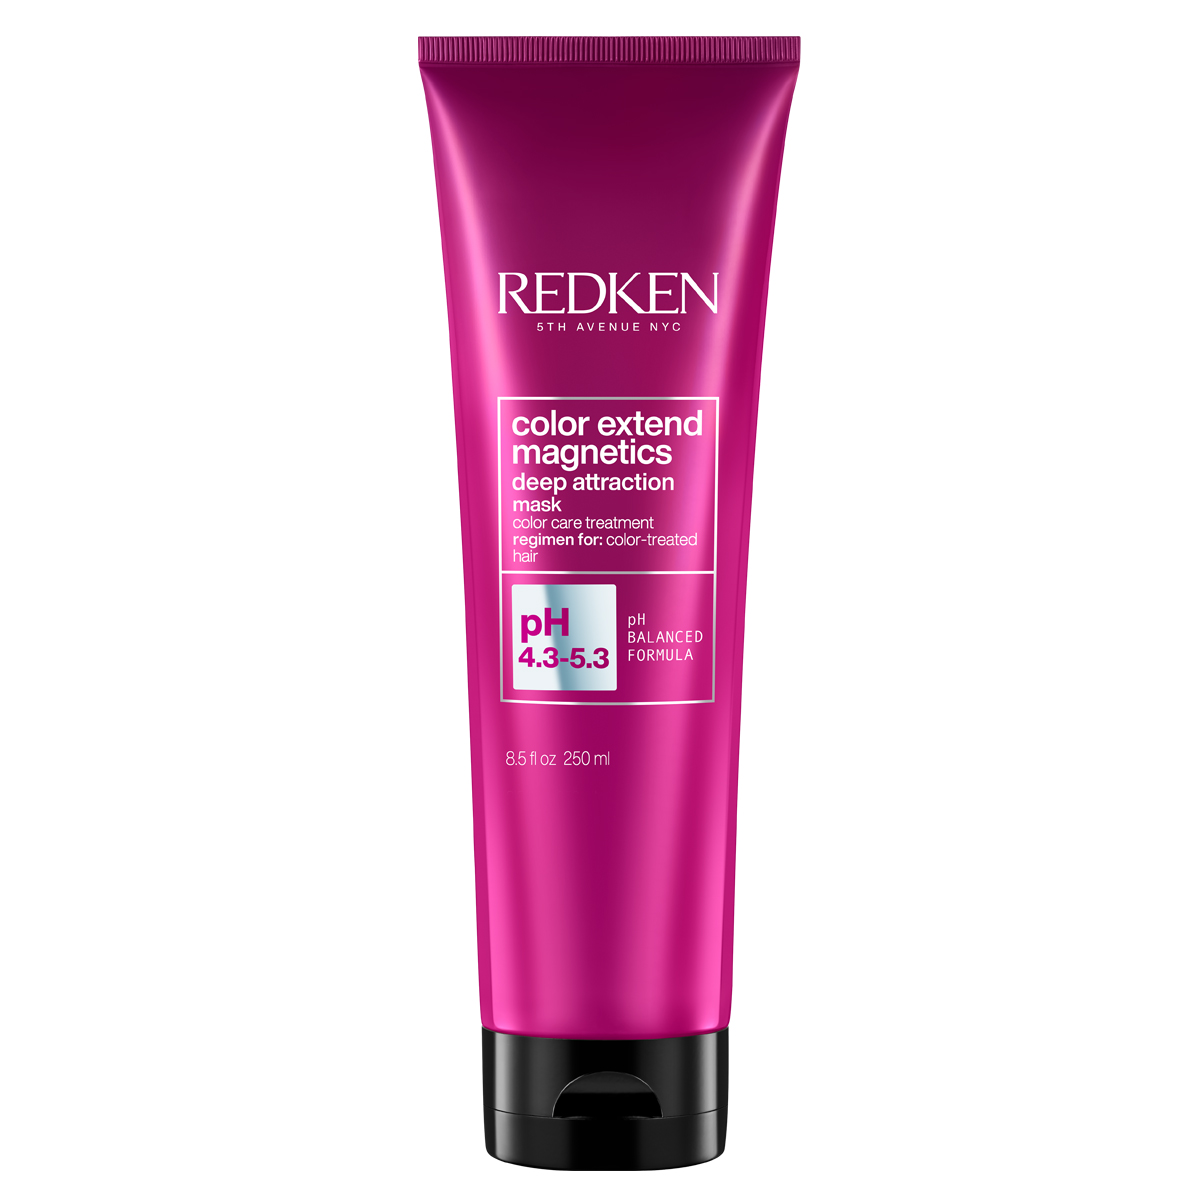 Купить Redken Маска для окрашенных волос Deep attraction, 250 мл (Redken, Уход за волосами), США